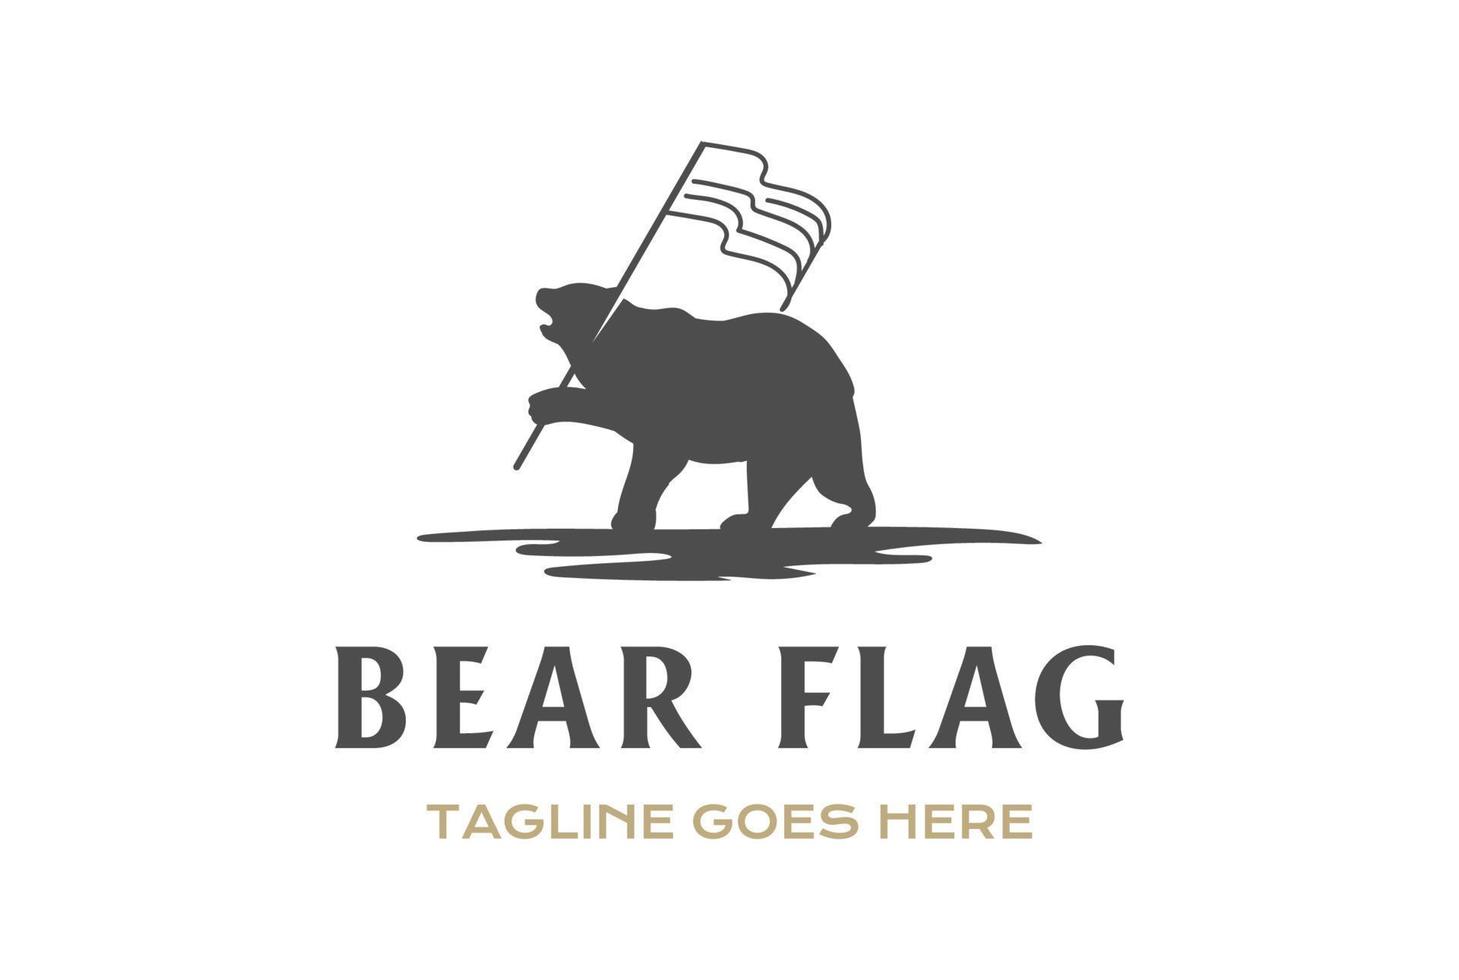 hielo de pie silueta de oso grizzly polar mantener diseño de logotipo de bandera americana us swoosh vector